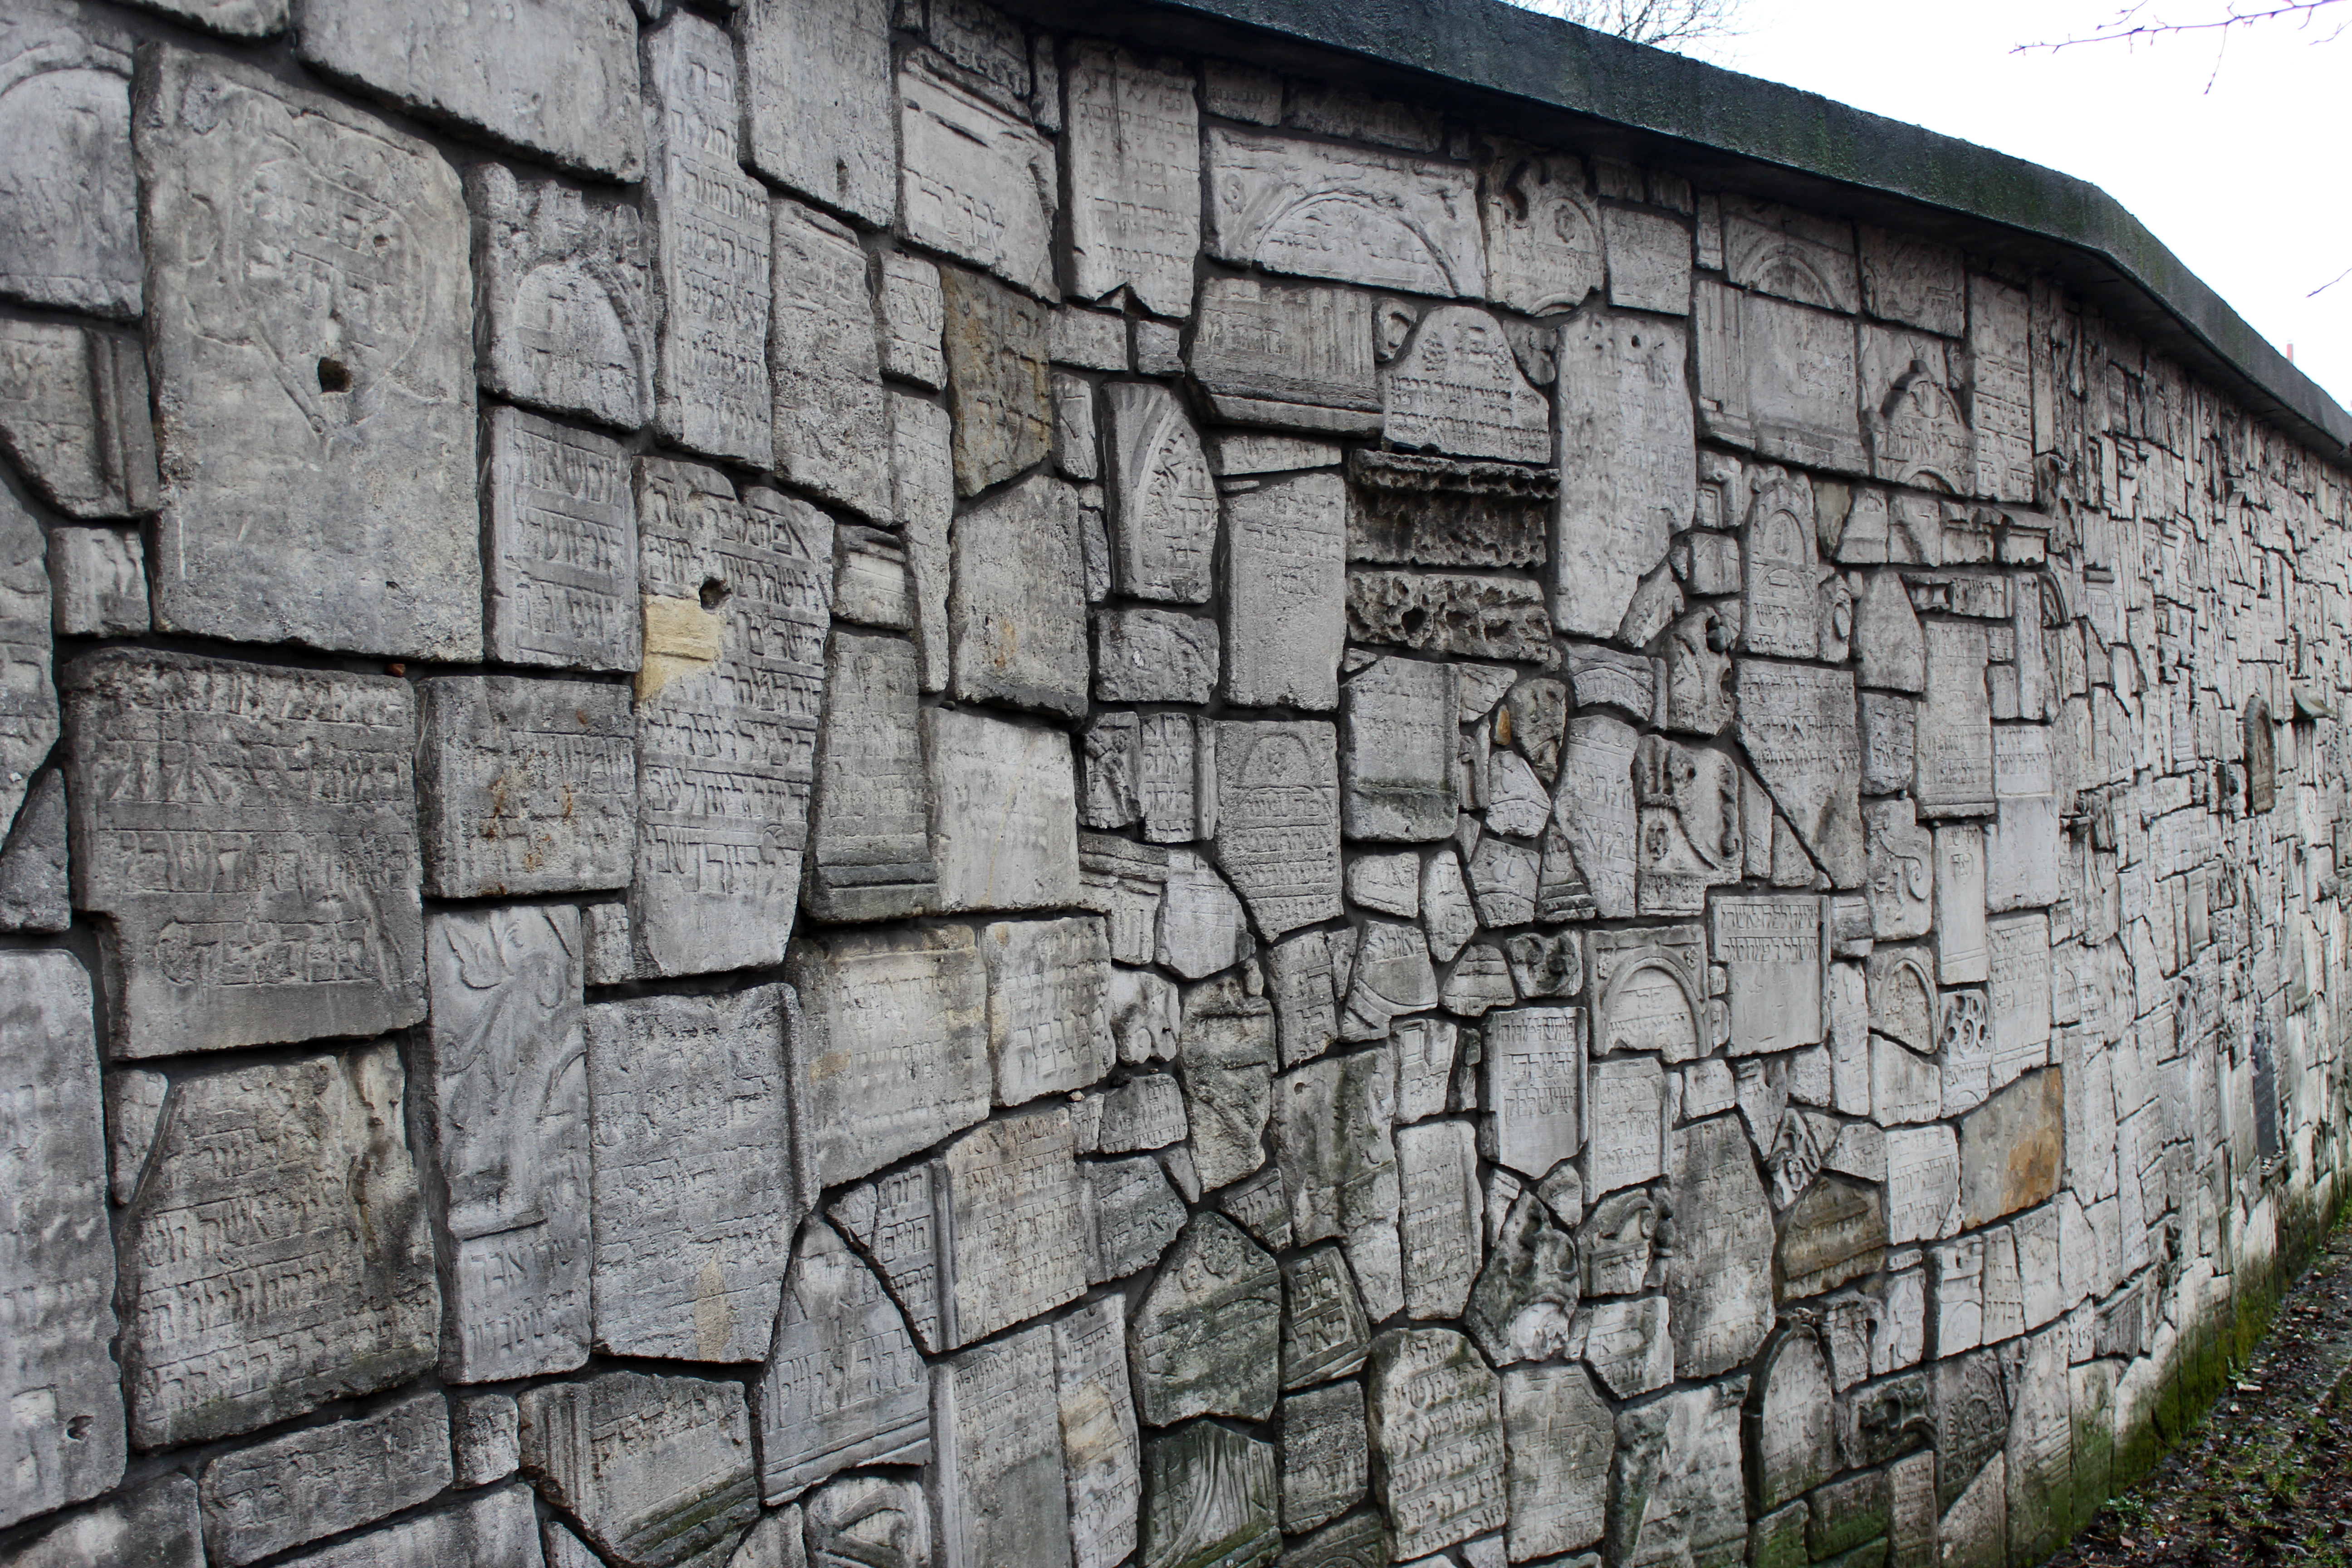 Eine Mauer, jeder Stein voller Gravuren hebräischer Inschriften.